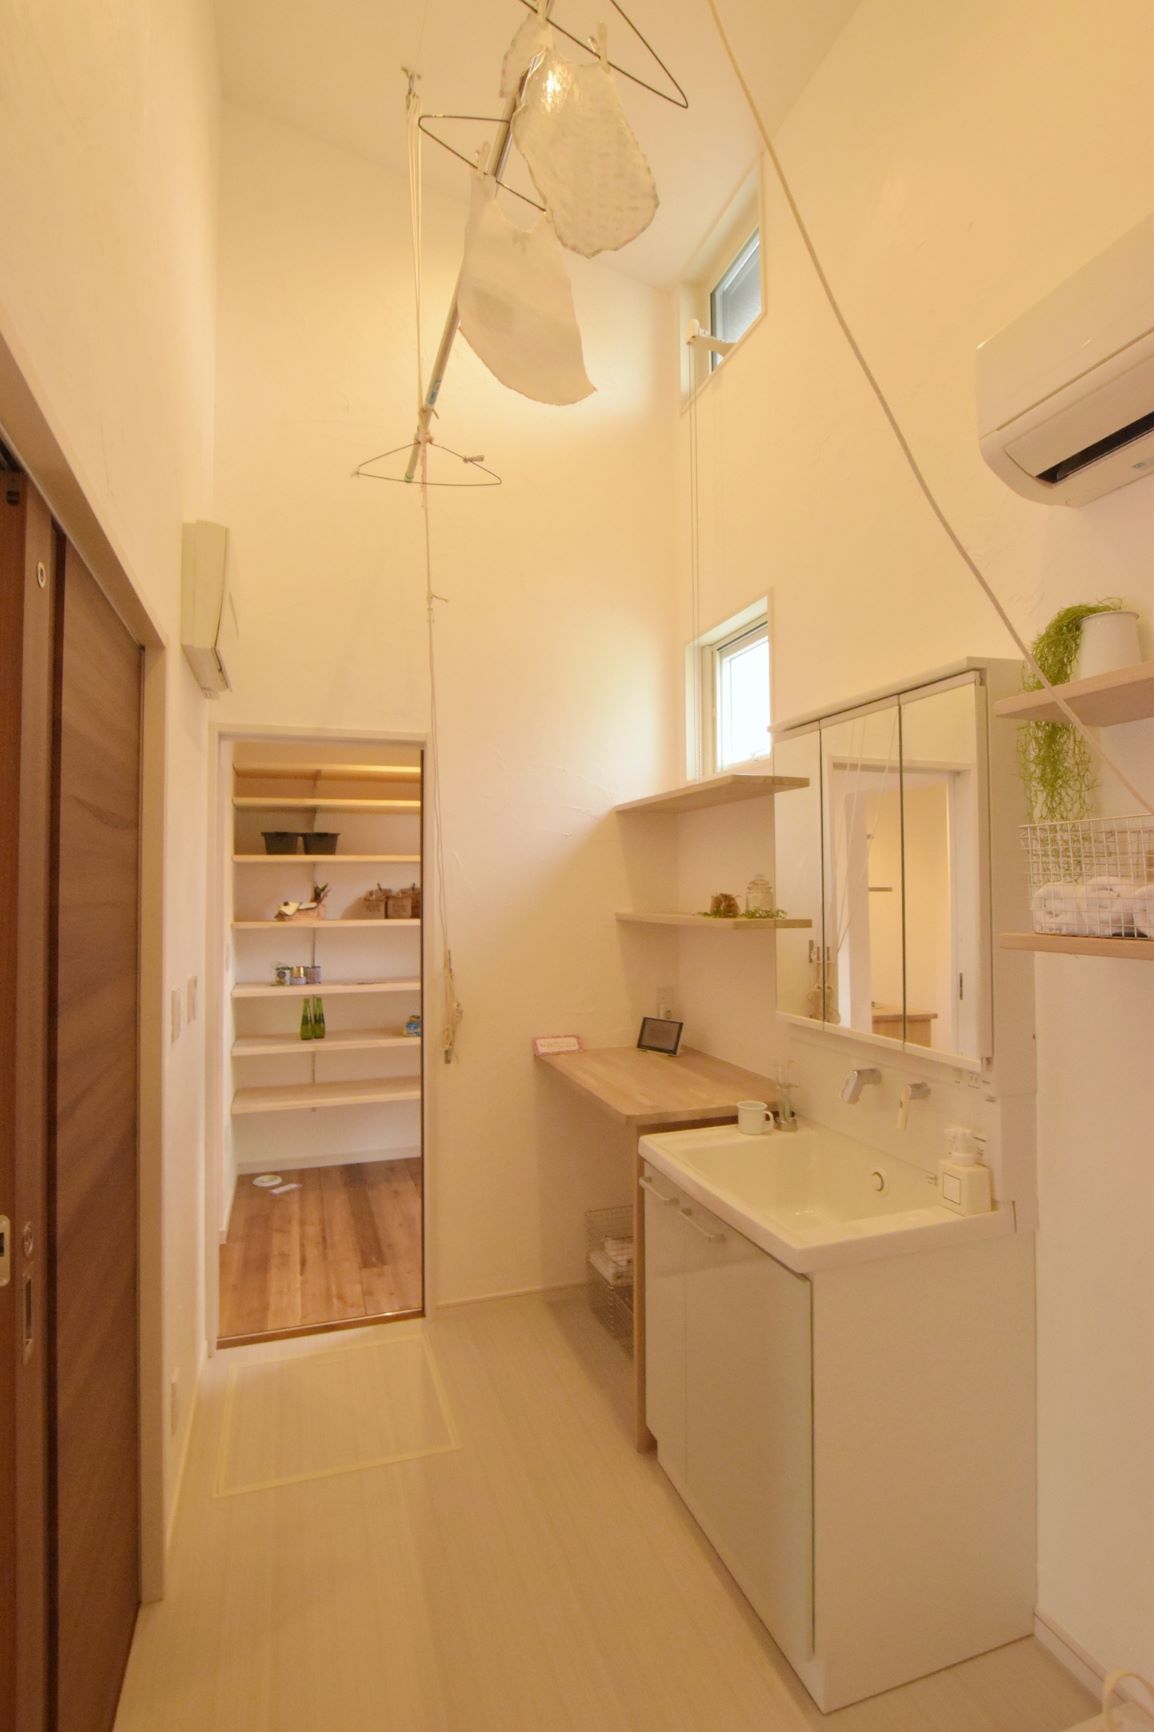 洗面脱衣室はマスターズオリジナルの物干しシステムで部屋干しができるように。